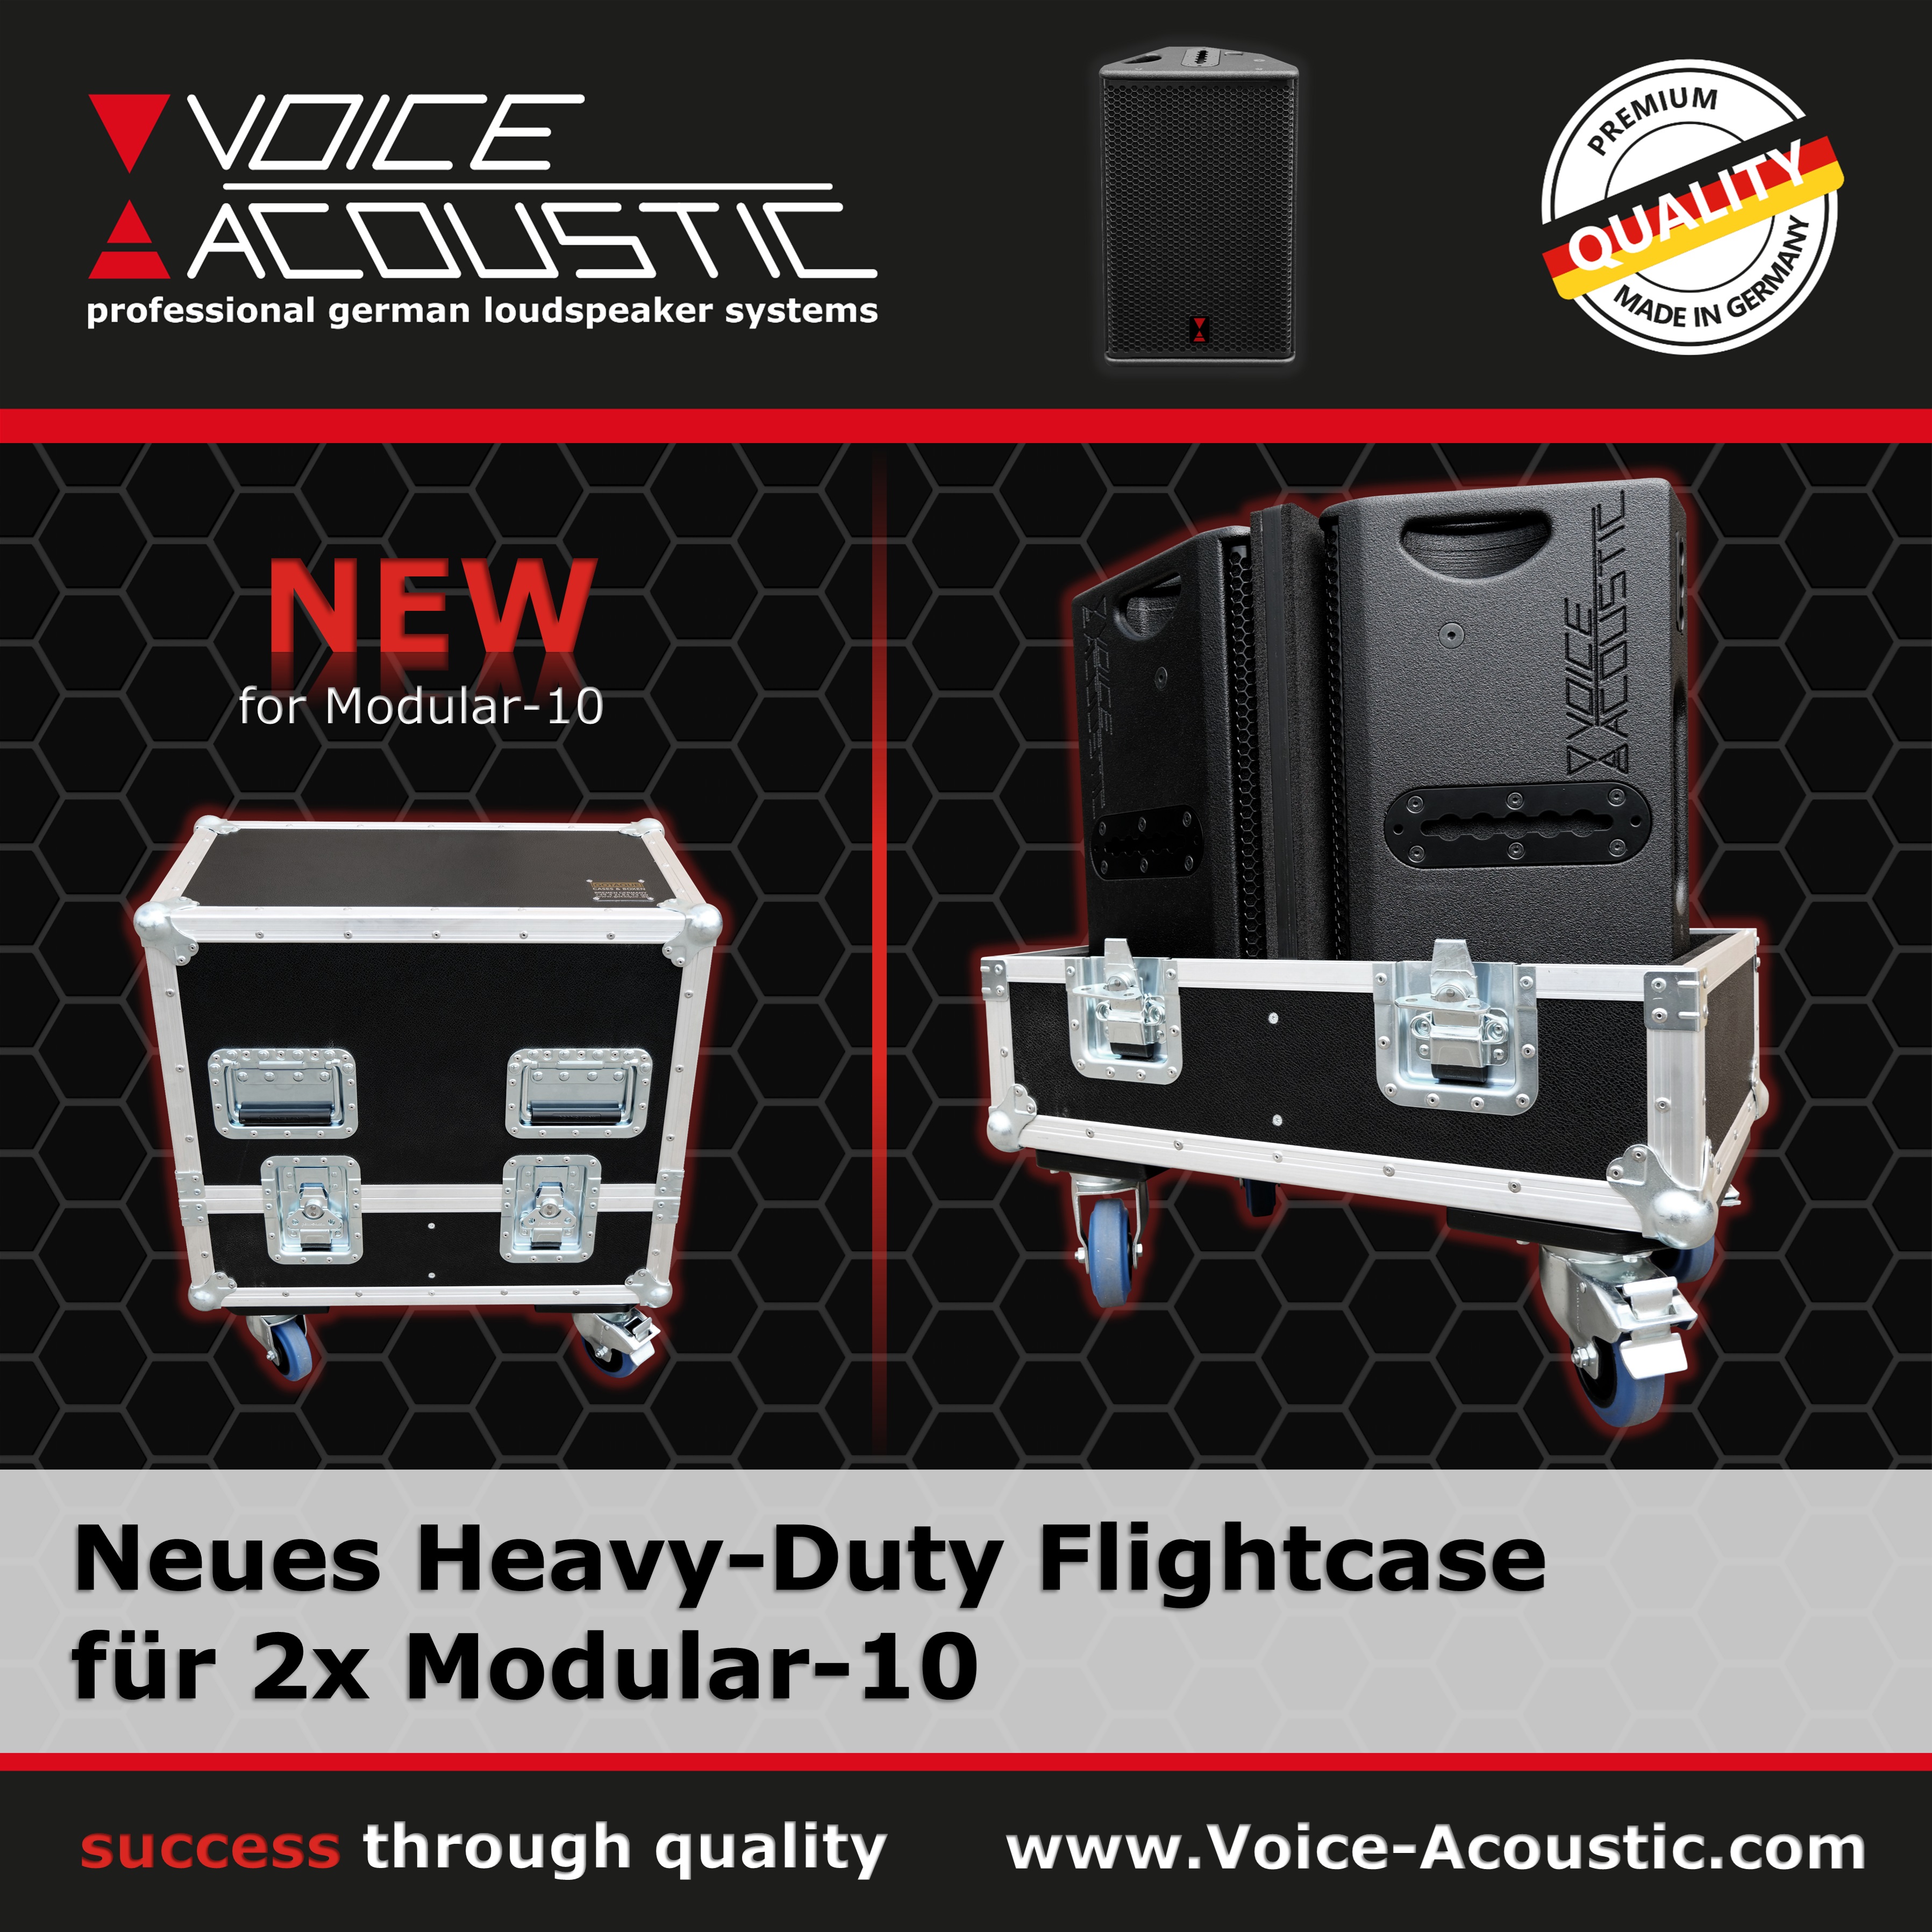 Neues Heavy-Duty Flightcase für Modular-10